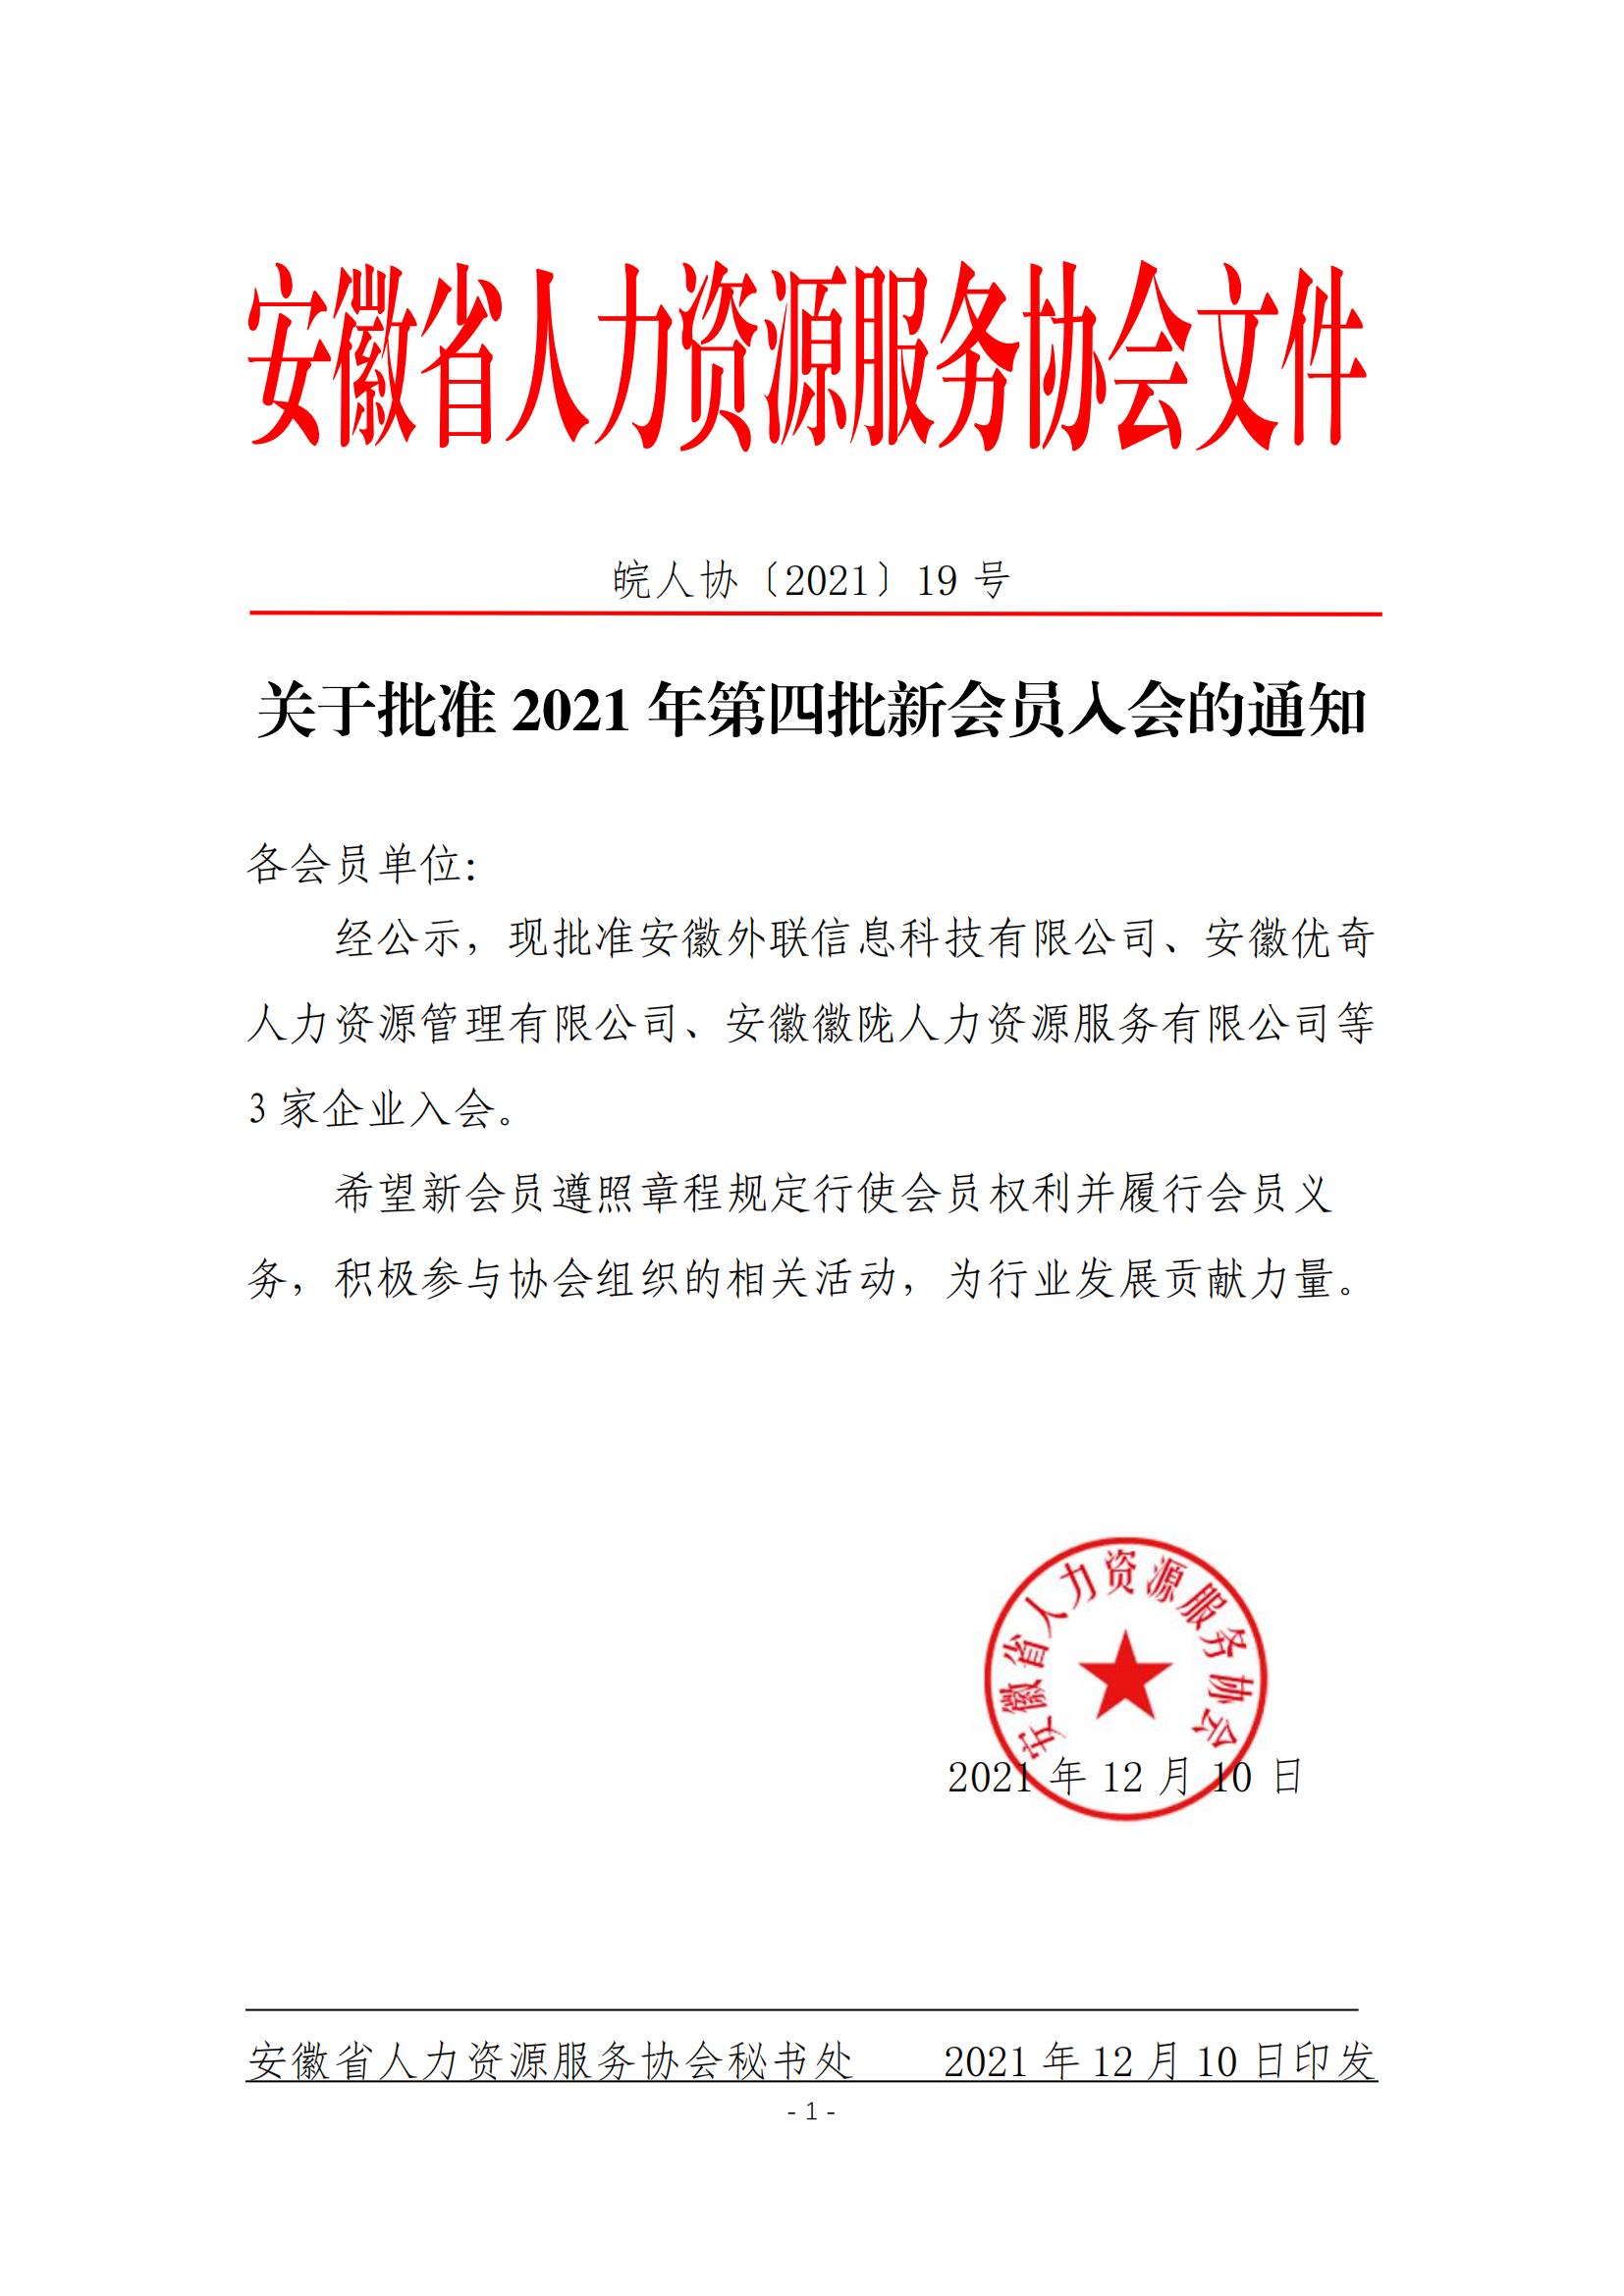 皖人协（2021）19号，关于批准2021年第四批新会员入会的通知_00.jpg